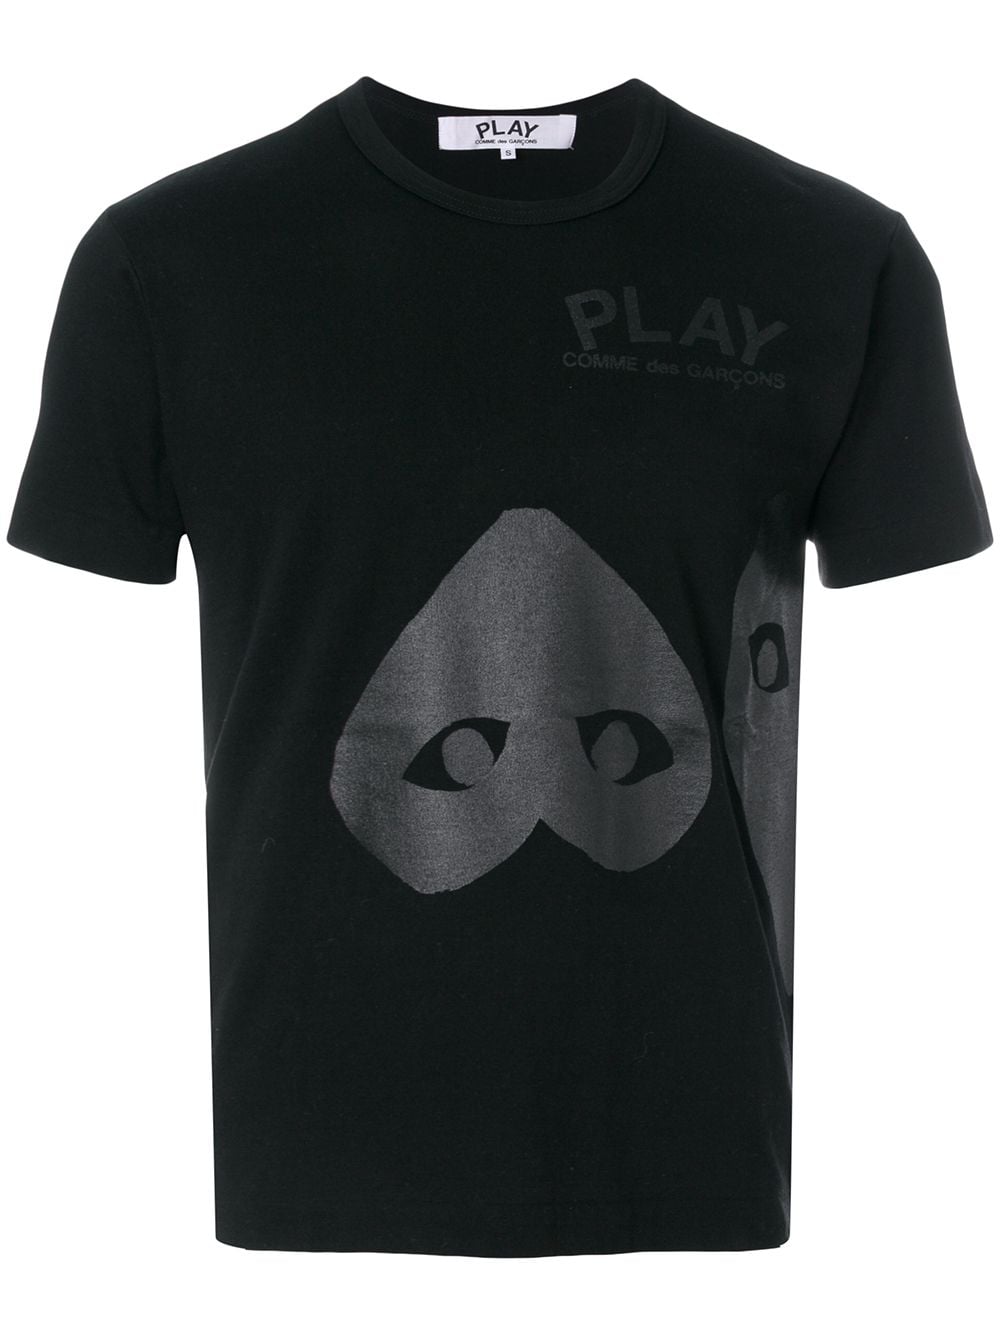 Comme Des Garçons Play heart print T-shirt - Black von Comme Des Garçons Play